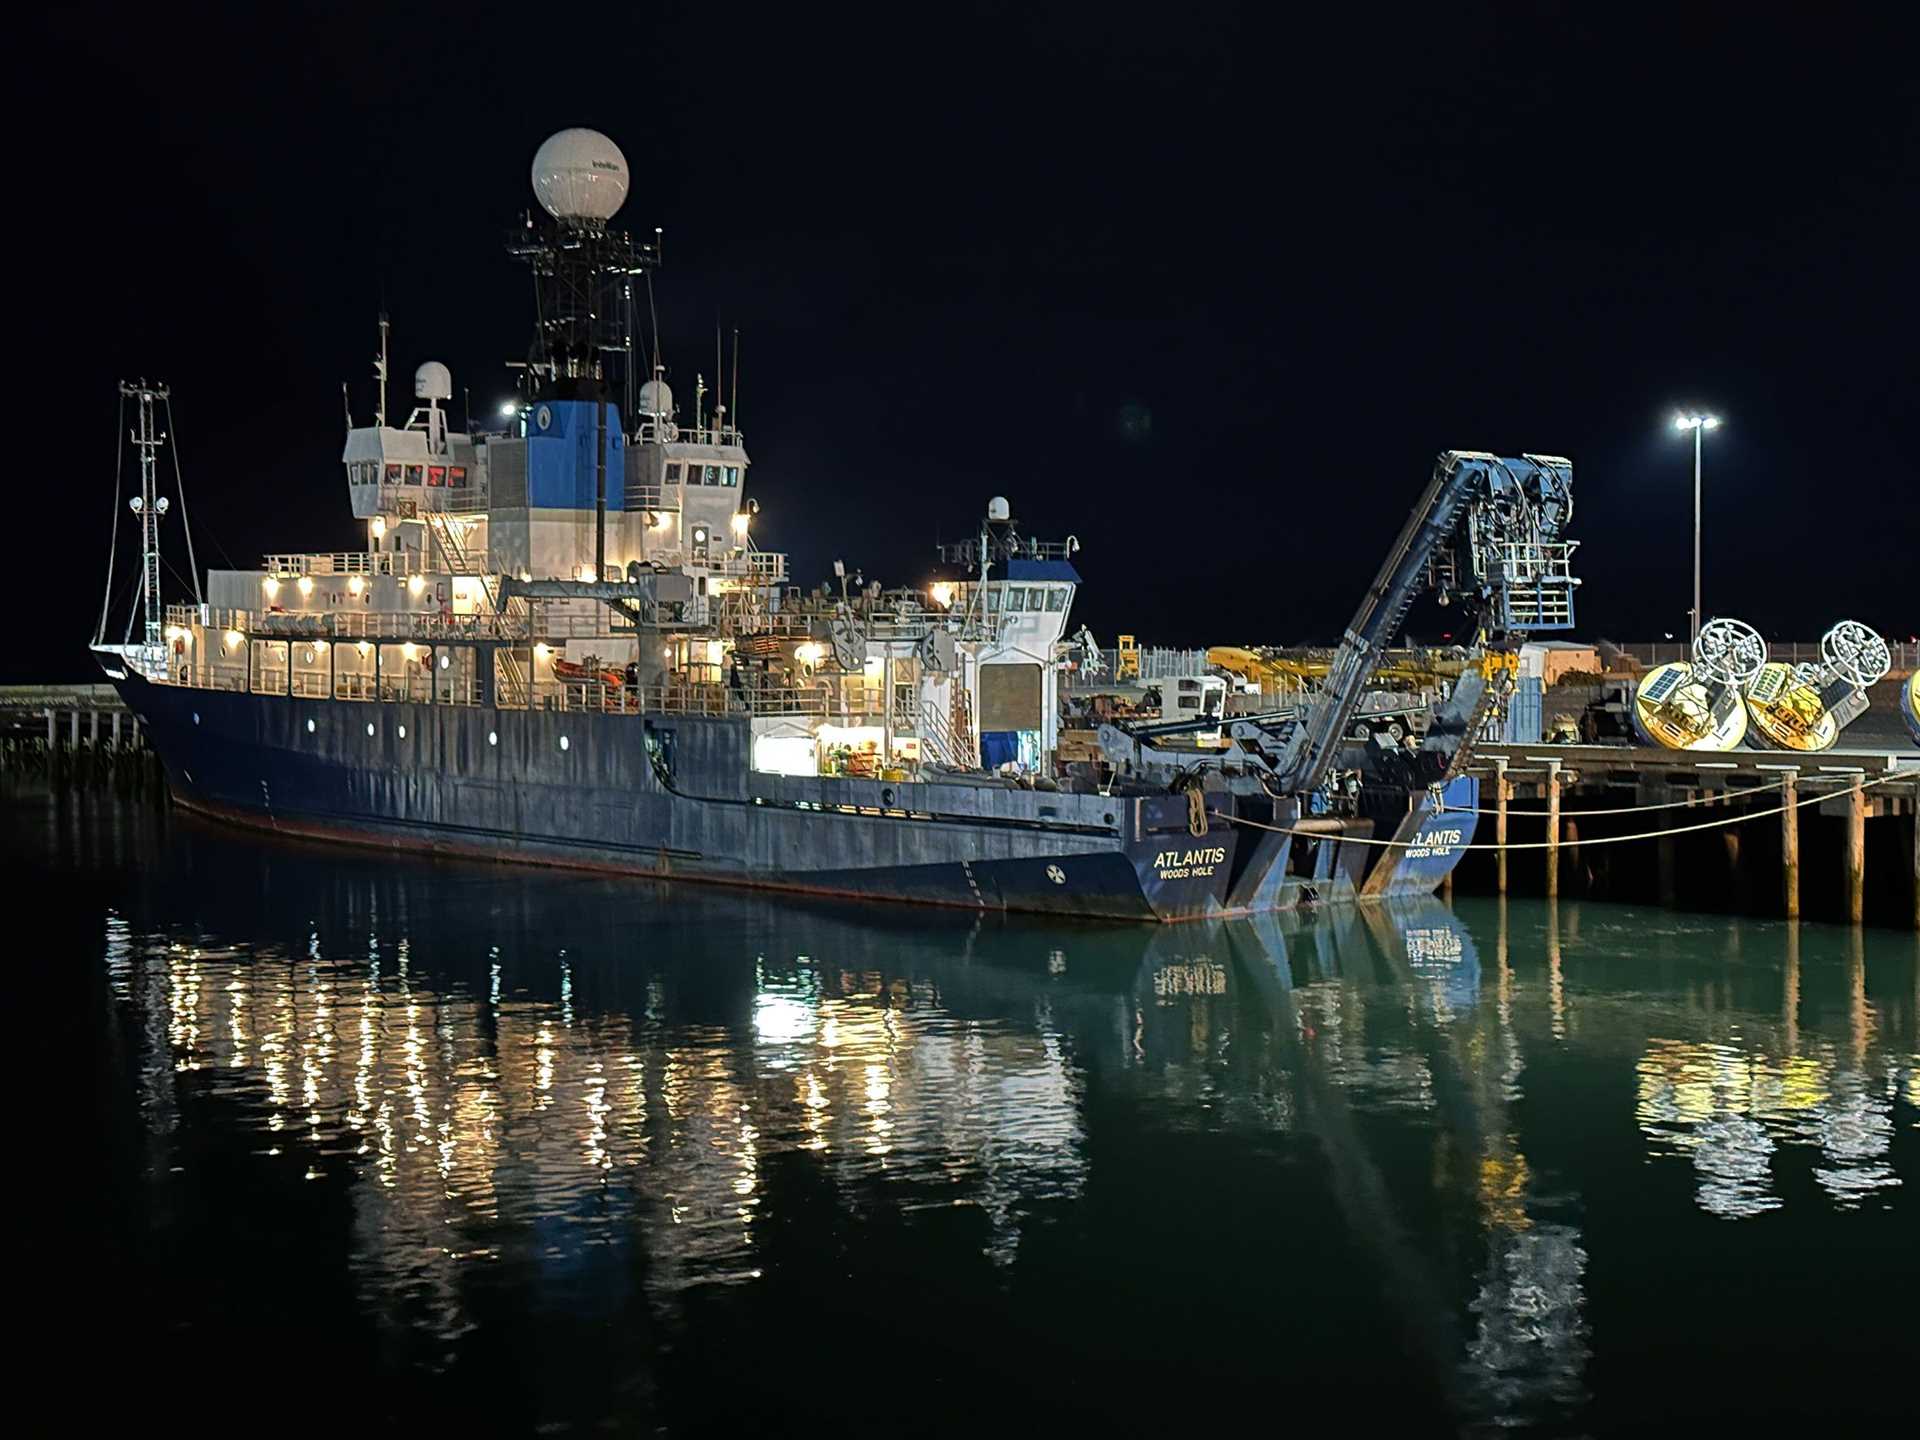 r/v Atlantis ship at night